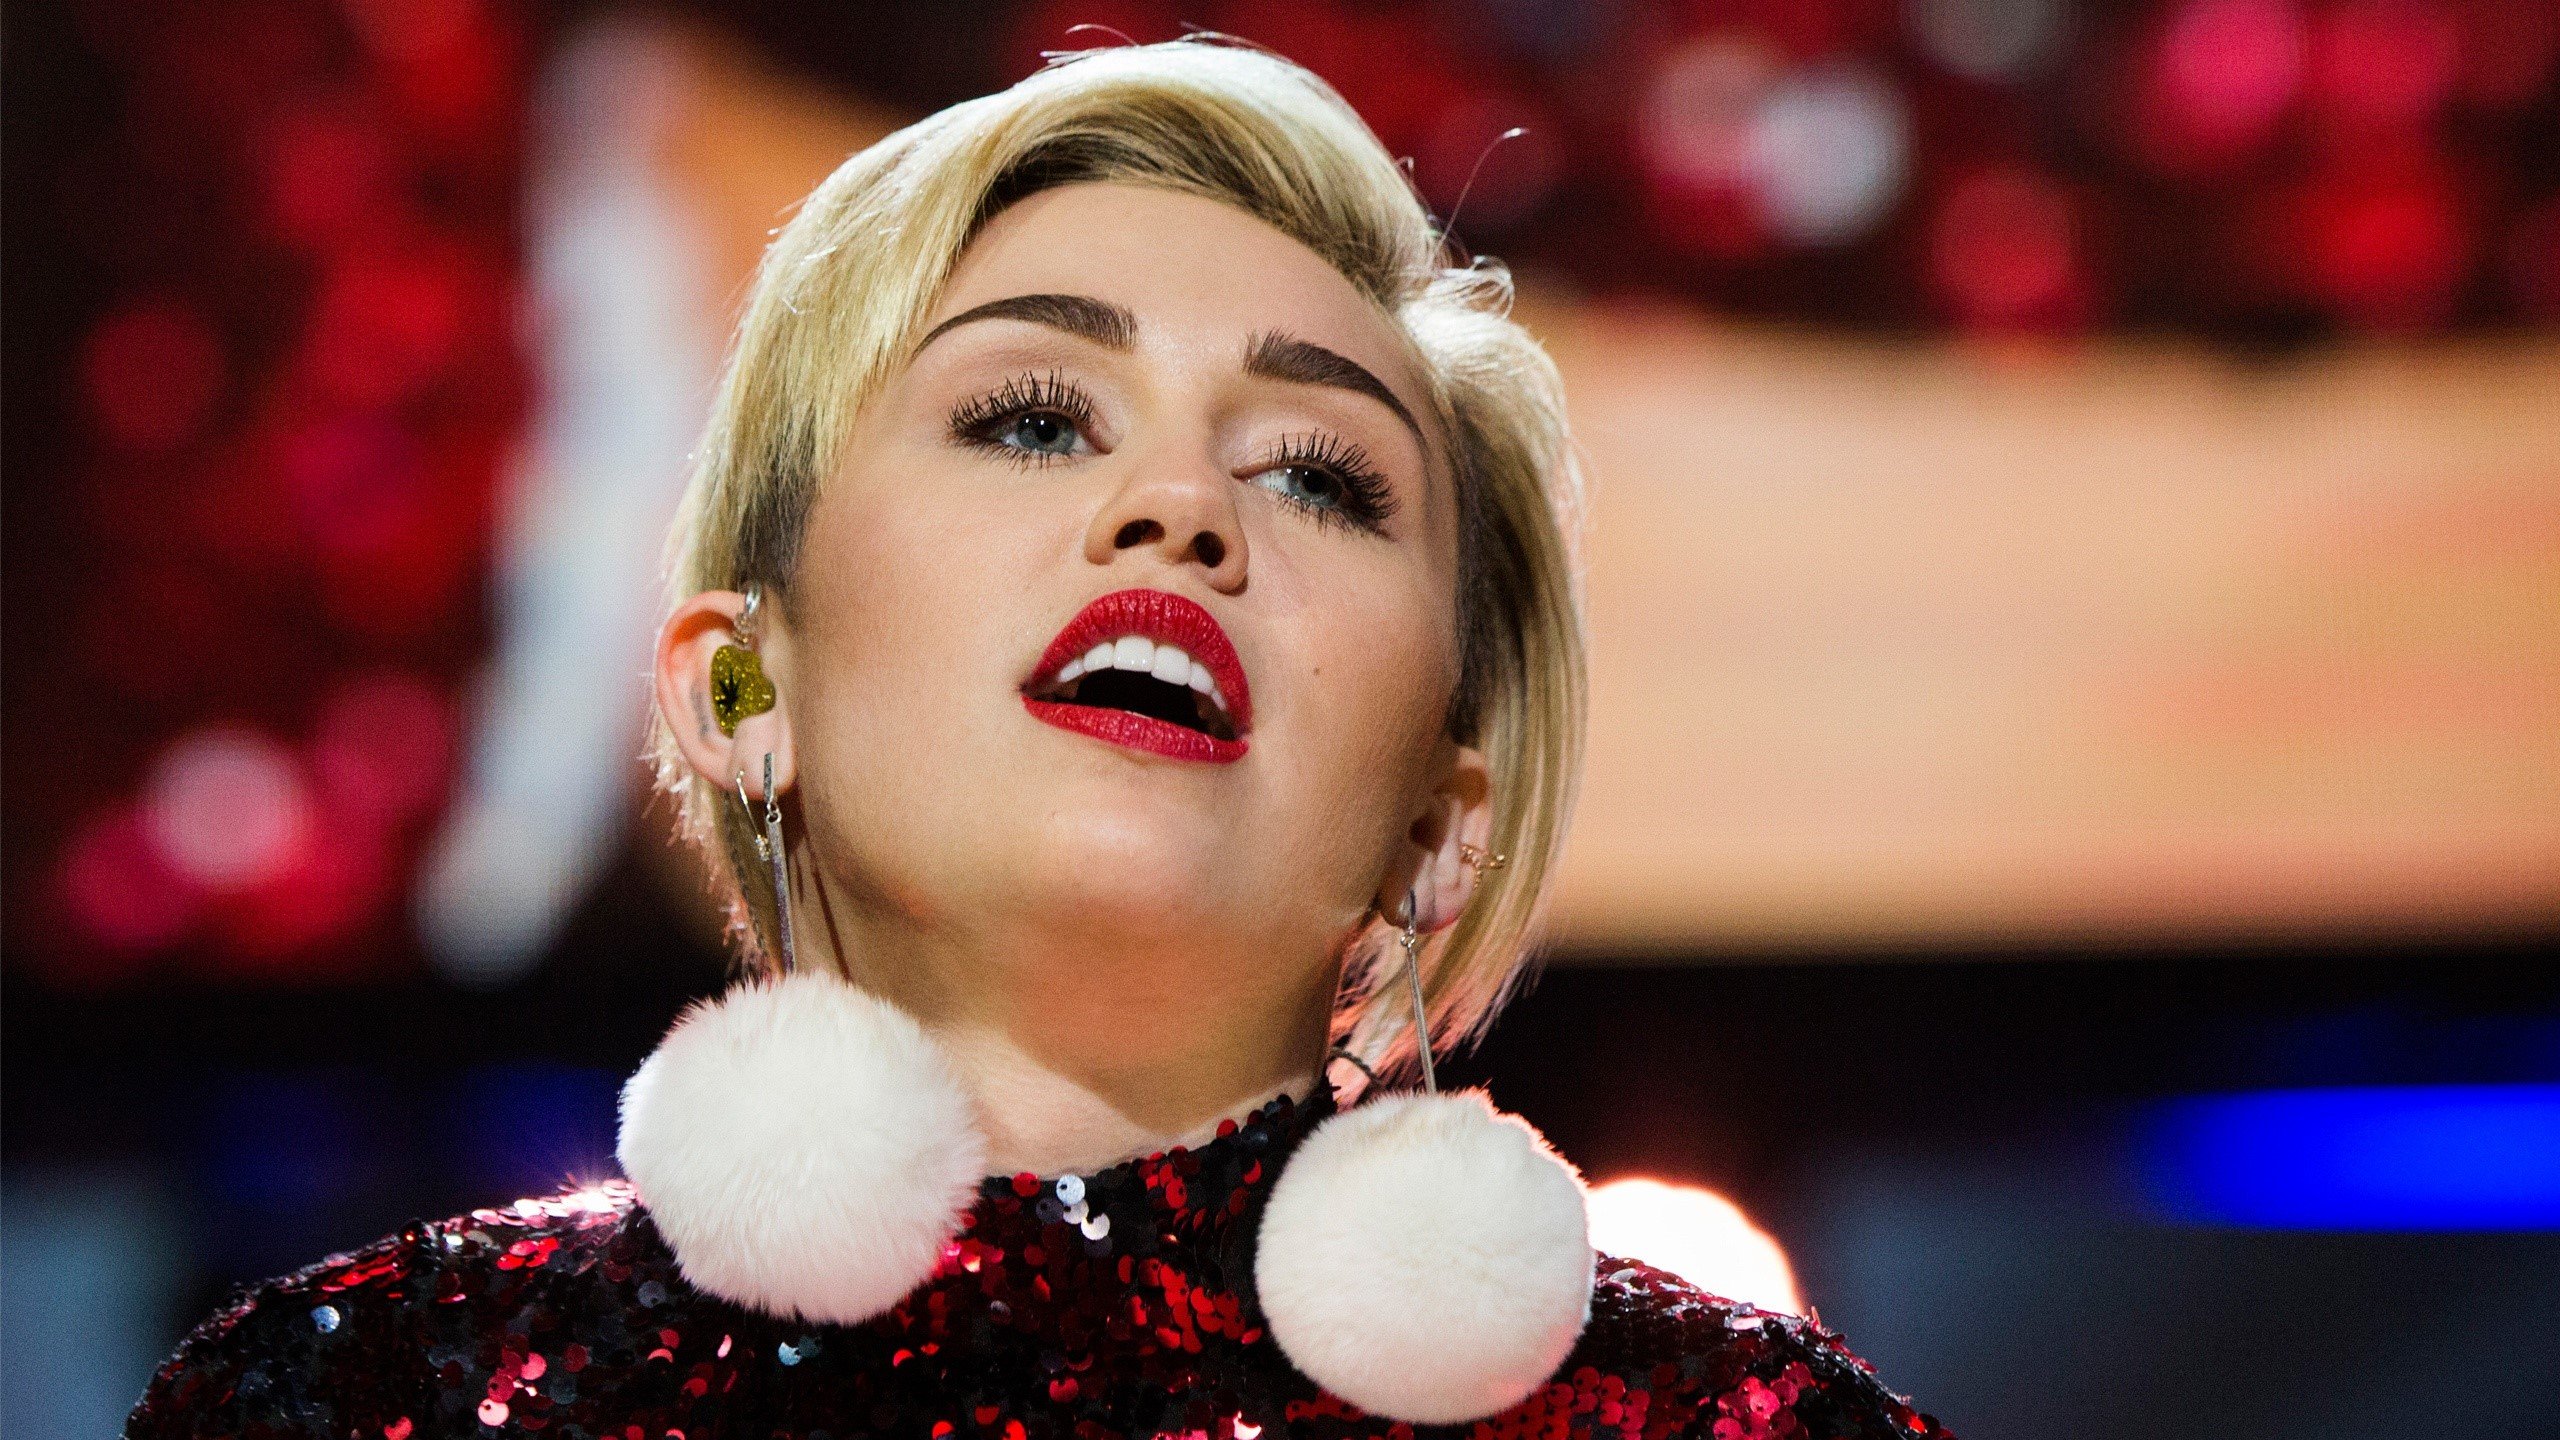 Fondos de pantalla Miley Cyrus en un concierto